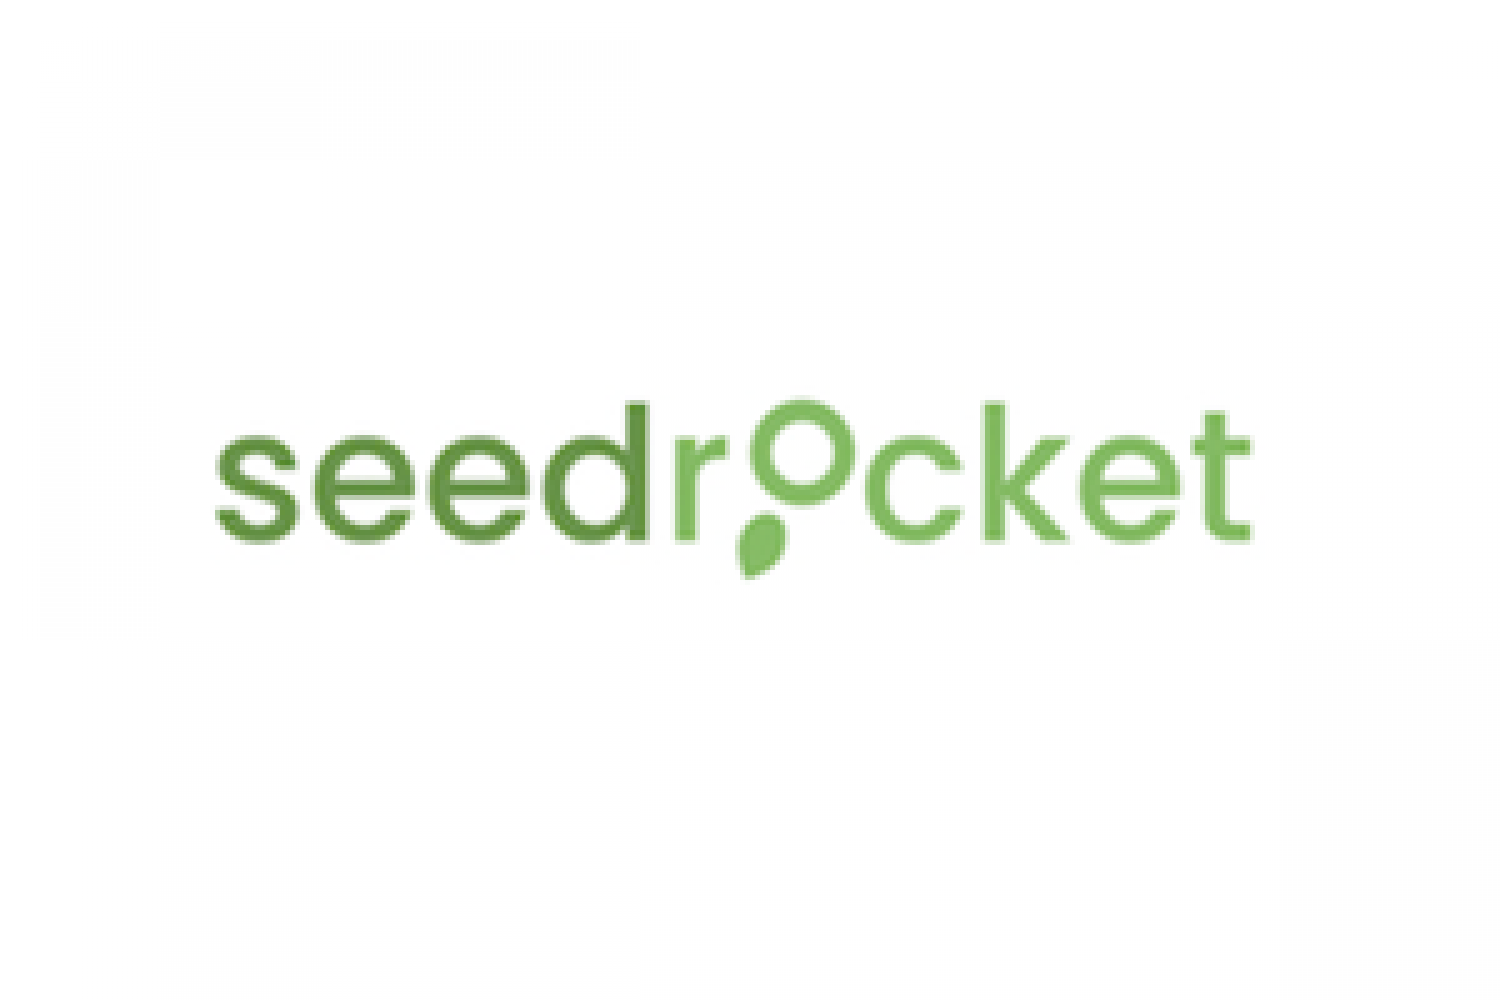 SeedRocket